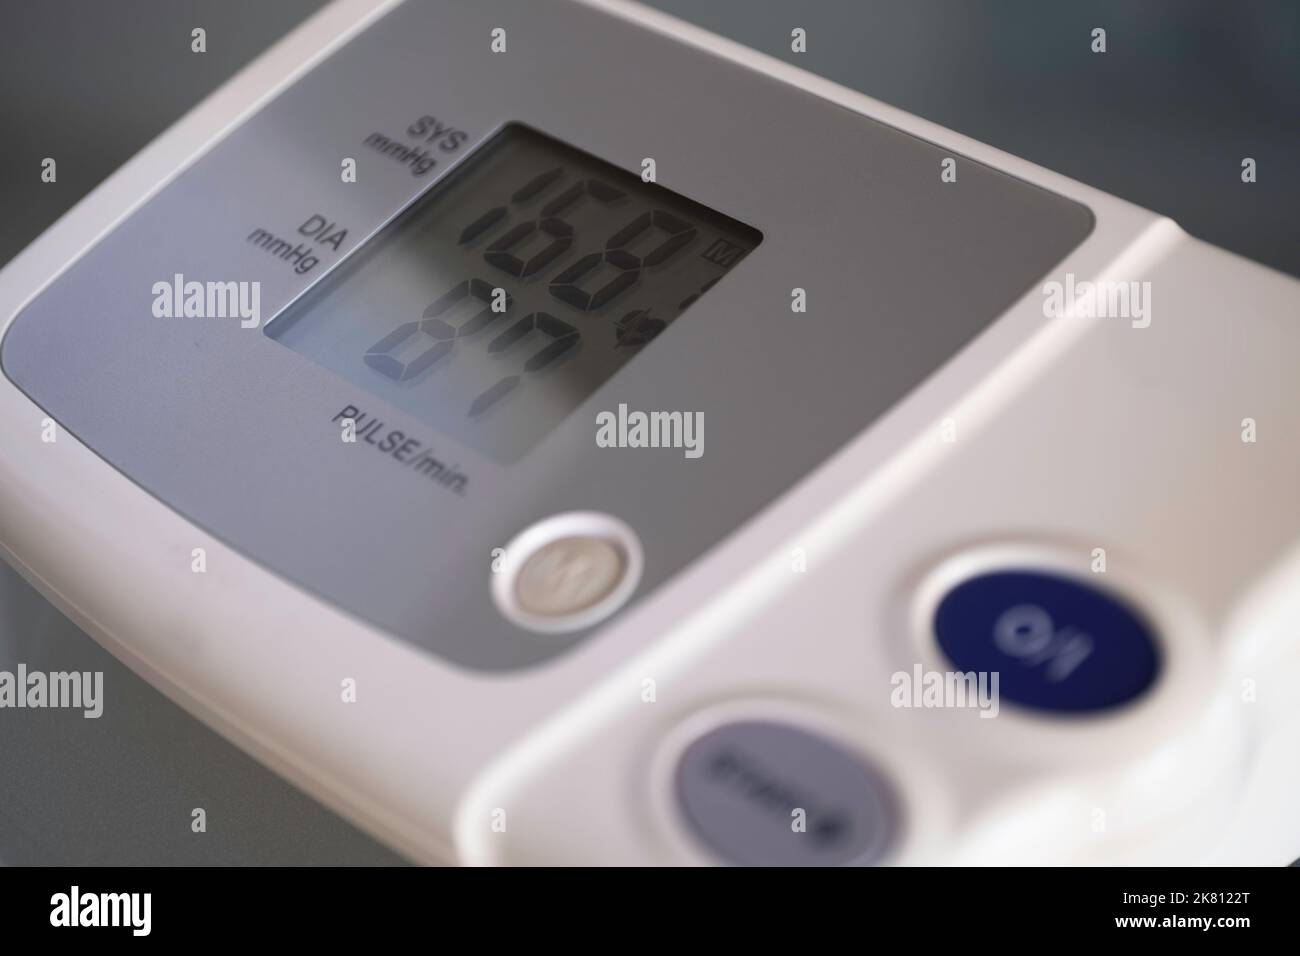 L'écran d'un moniteur de pression artérielle numérique électronique affiche les valeurs de pression supérieure (systolique) et inférieure (diastolique) Banque D'Images